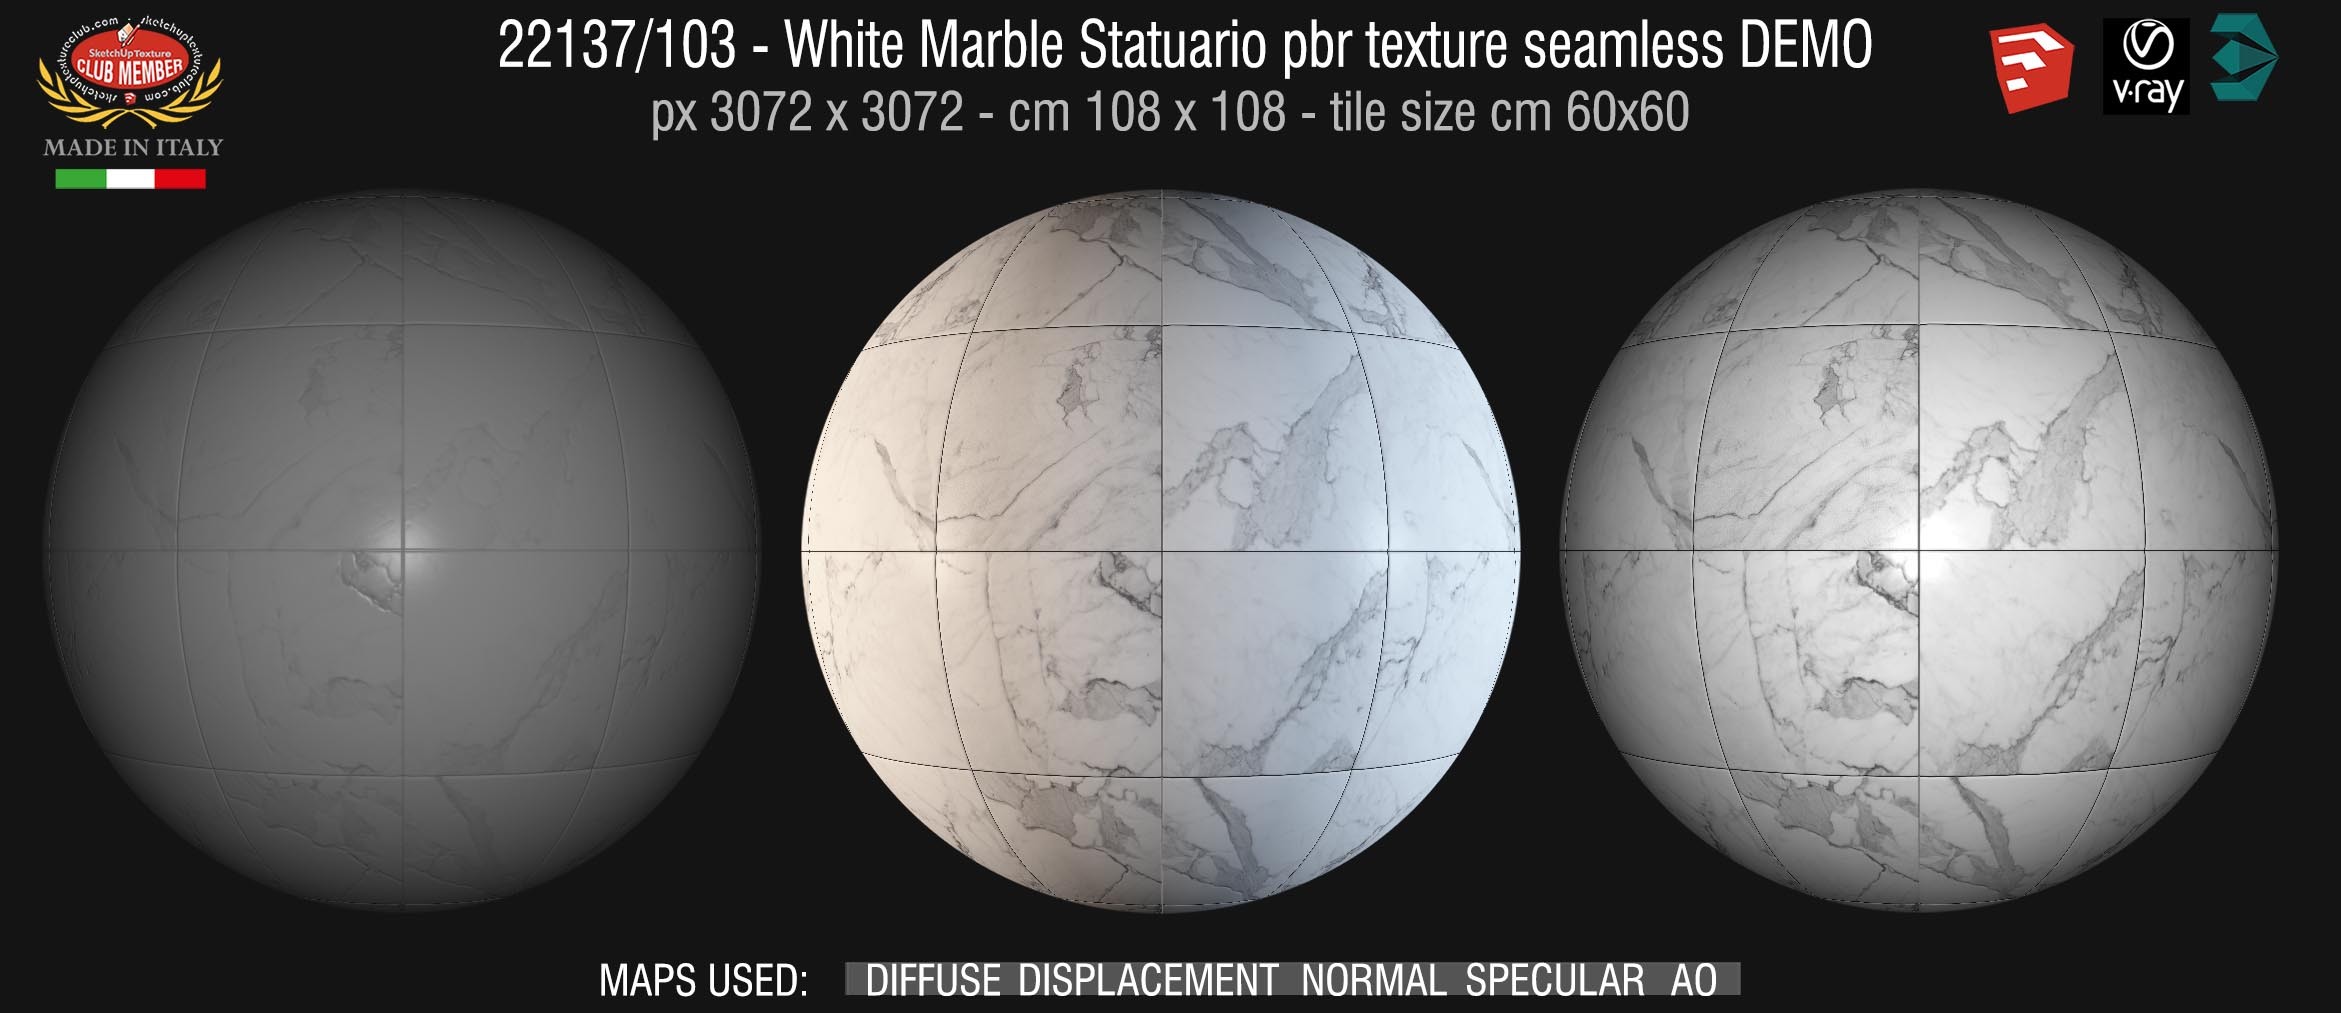 22137/103 White Marble Statuario pbr texture seamless DEMO - tile size cm 60x60